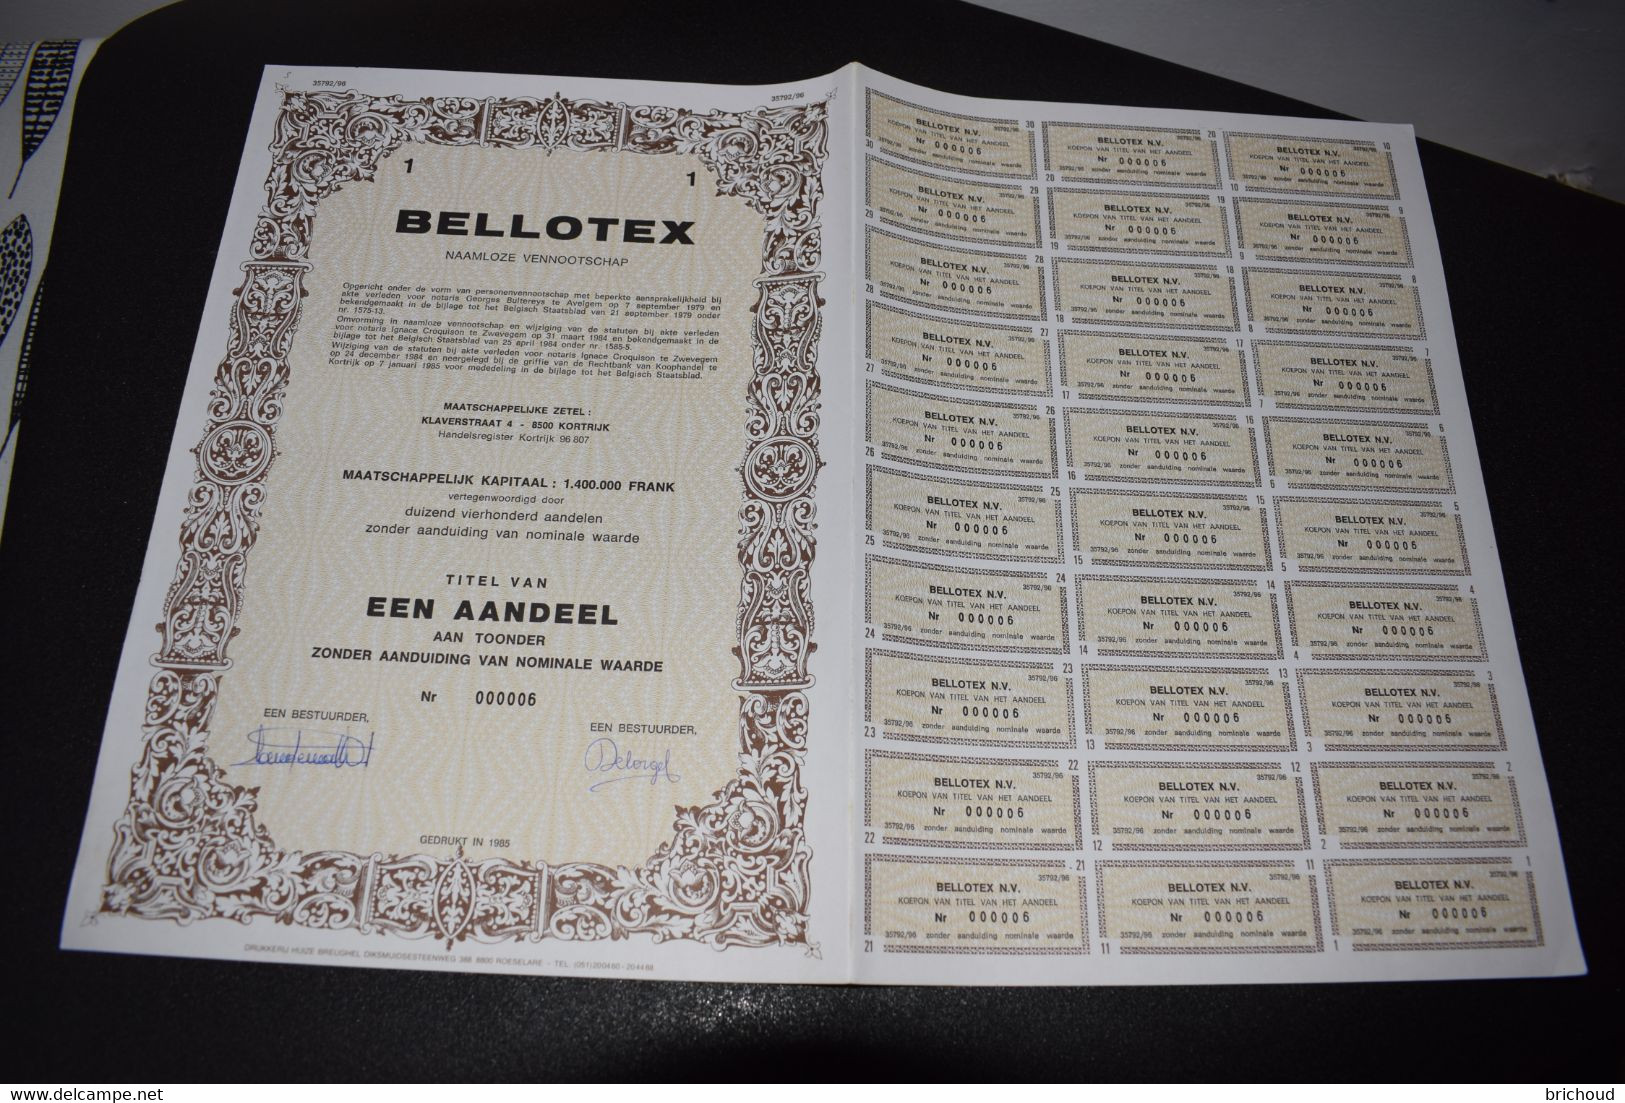 Bellotex Naamloze Vennootschap Textile 1 Aandeel 1985 Kortrijk Courtrai - Textile